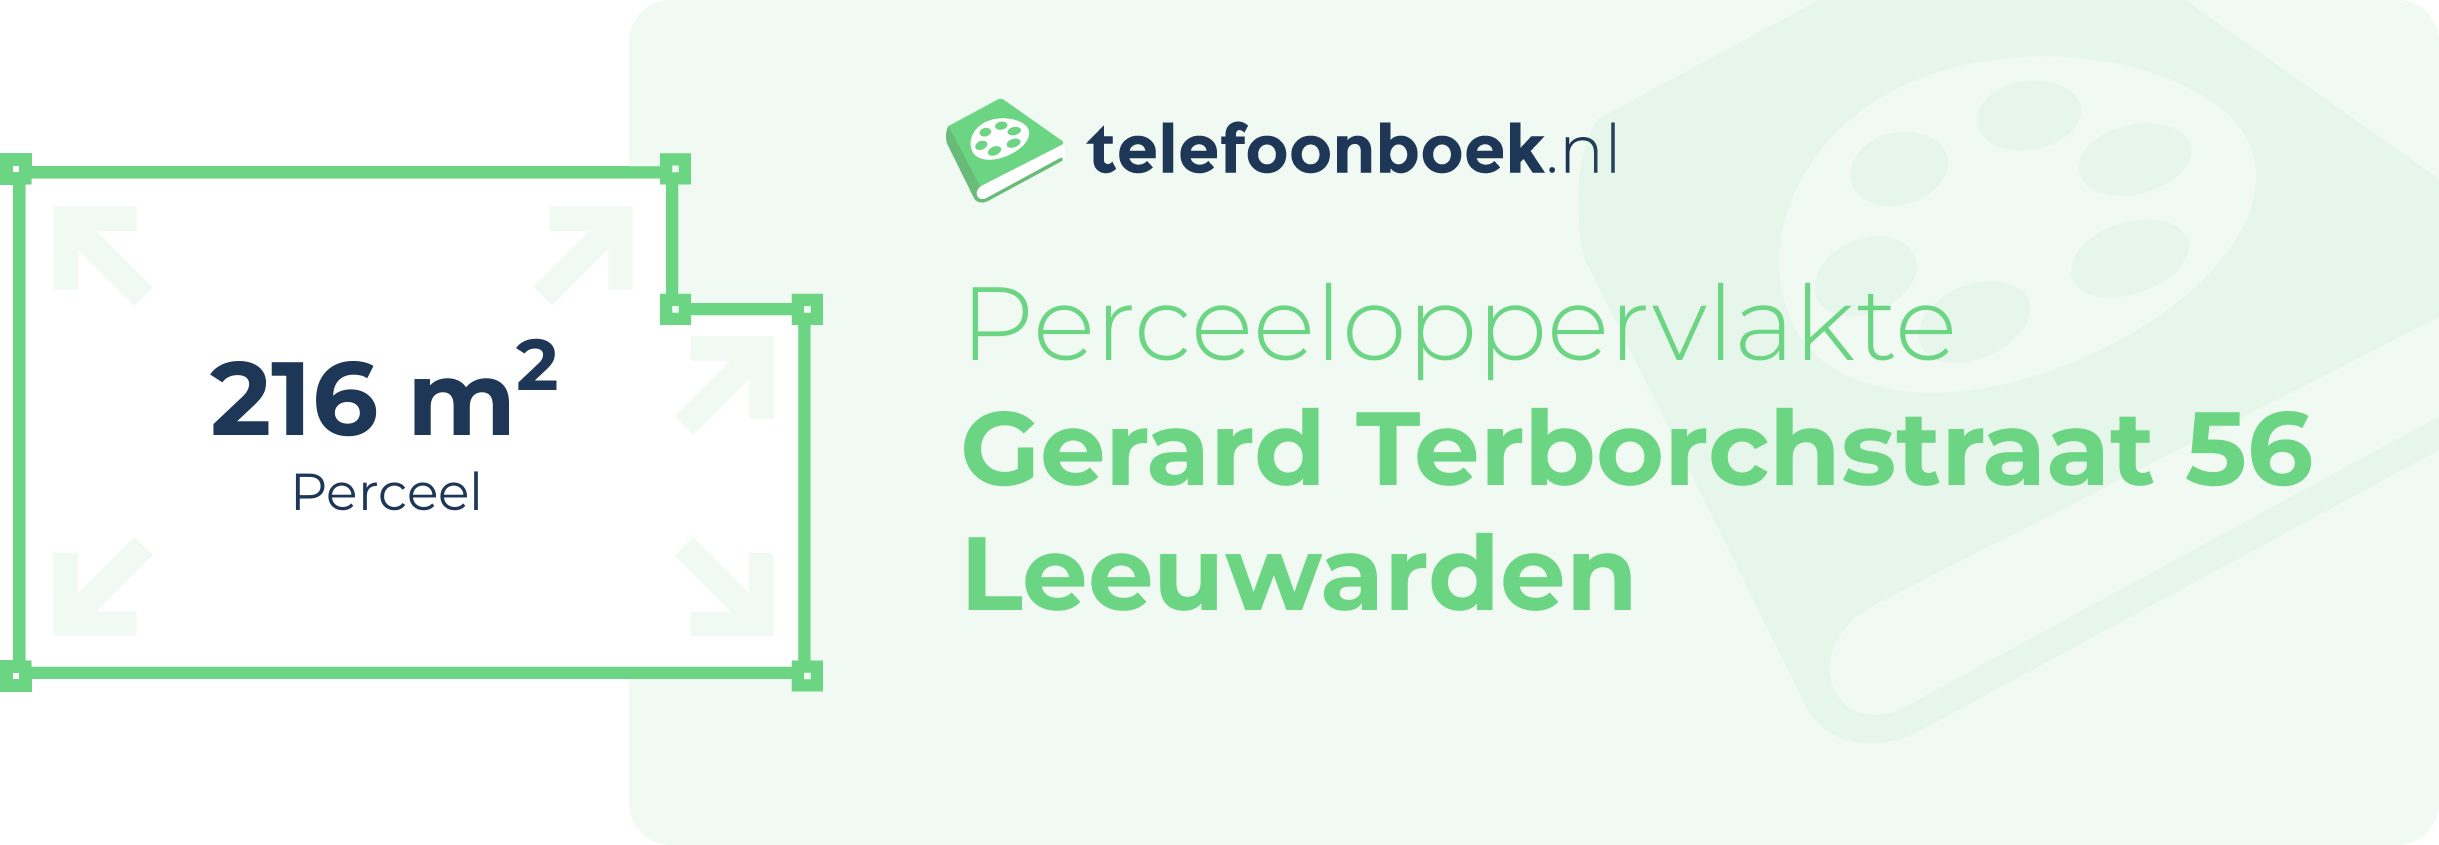 Perceeloppervlakte Gerard Terborchstraat 56 Leeuwarden